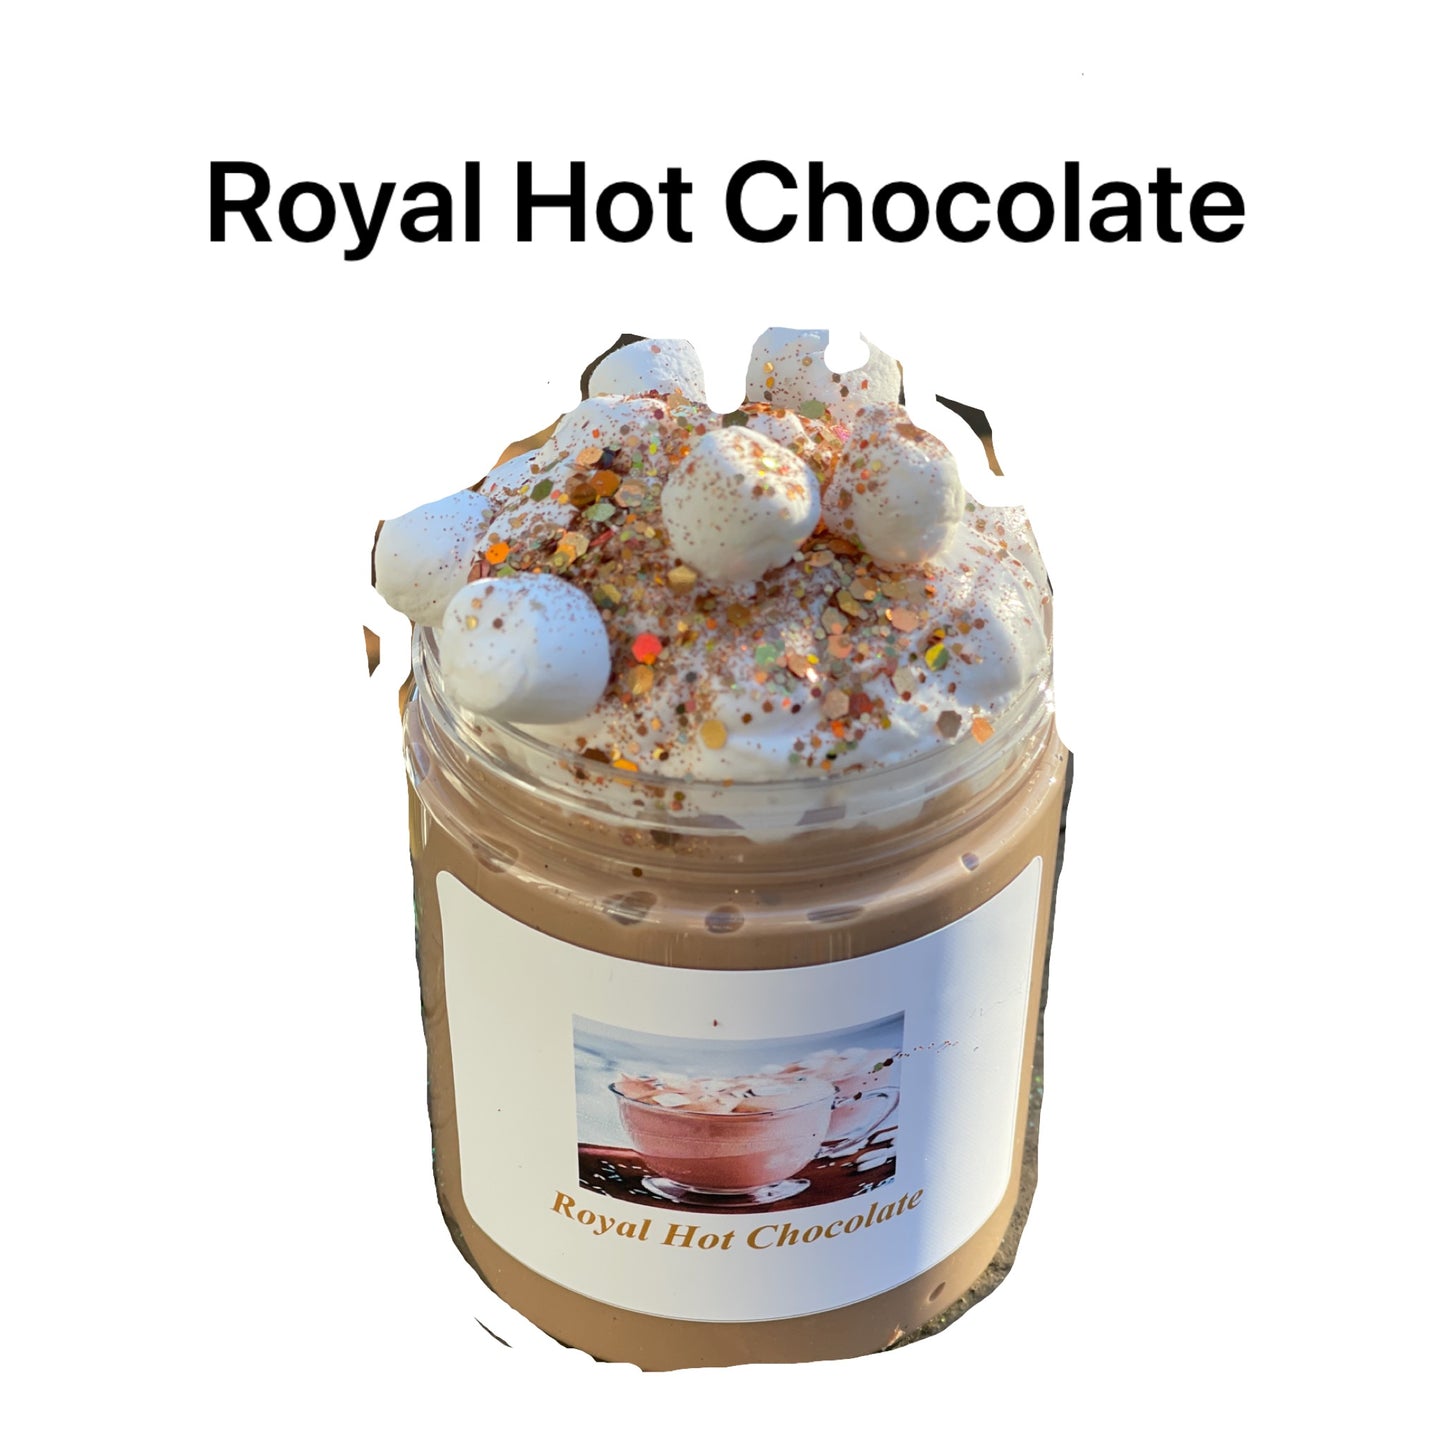 Royal Hot Chocolate